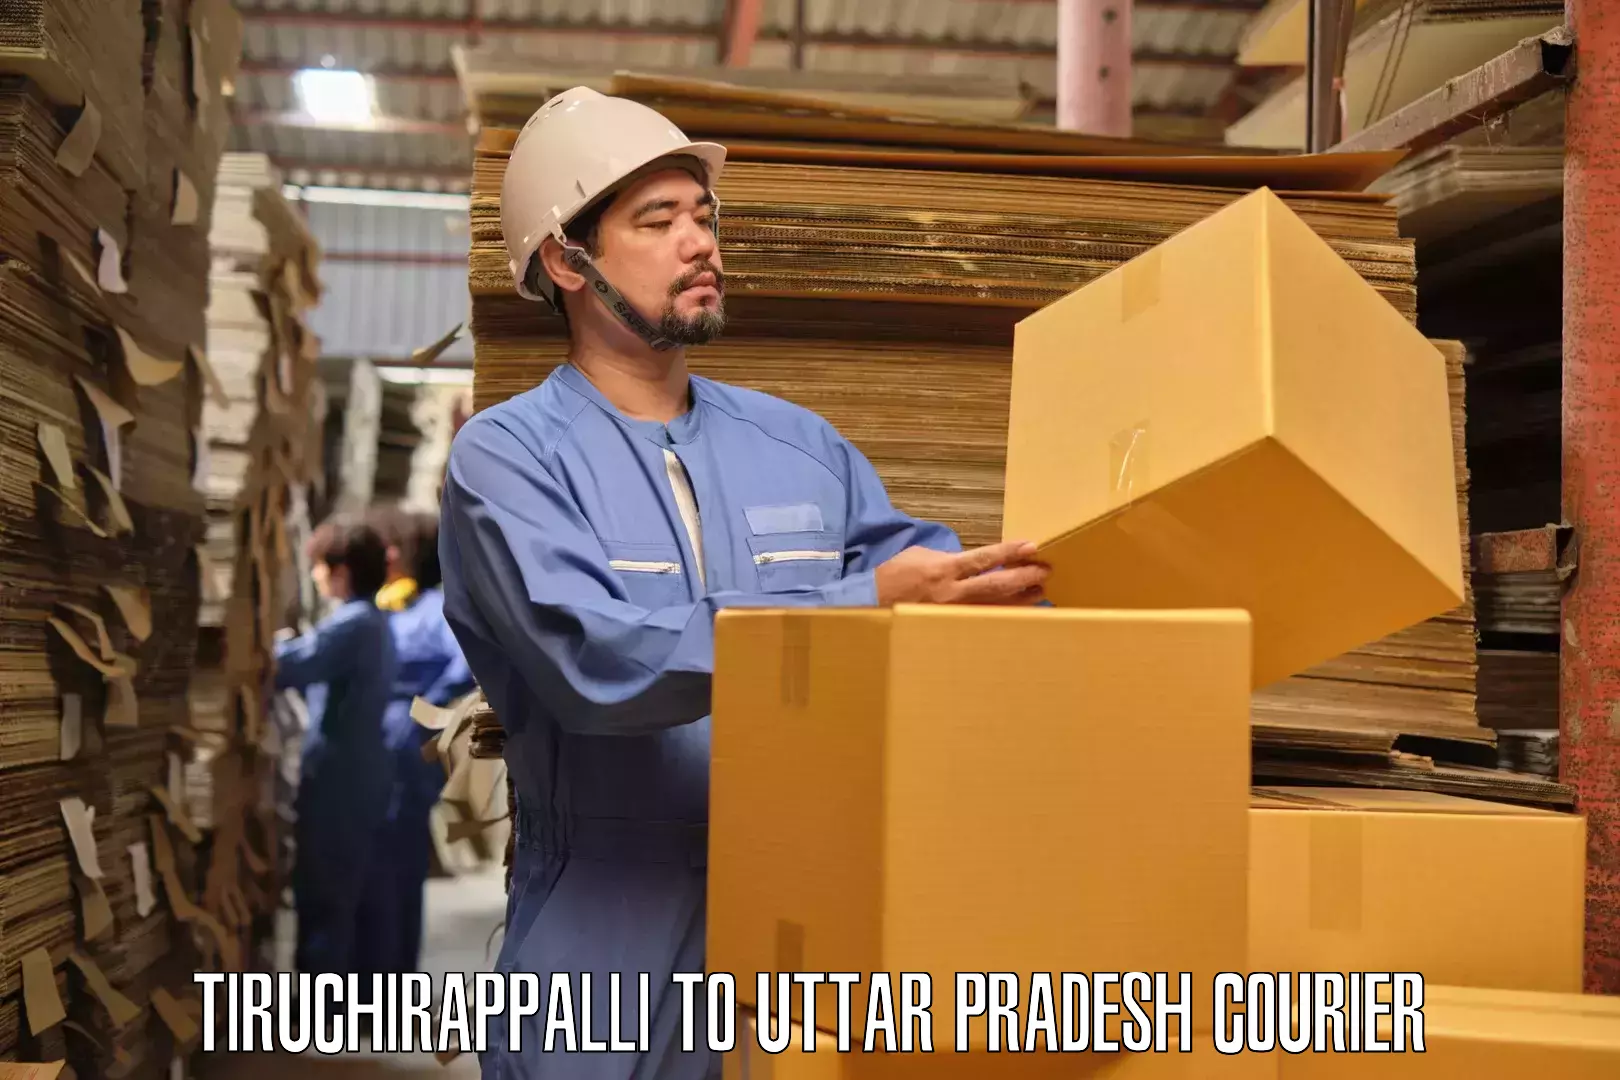 Furniture transport specialists Tiruchirappalli to Prayagraj